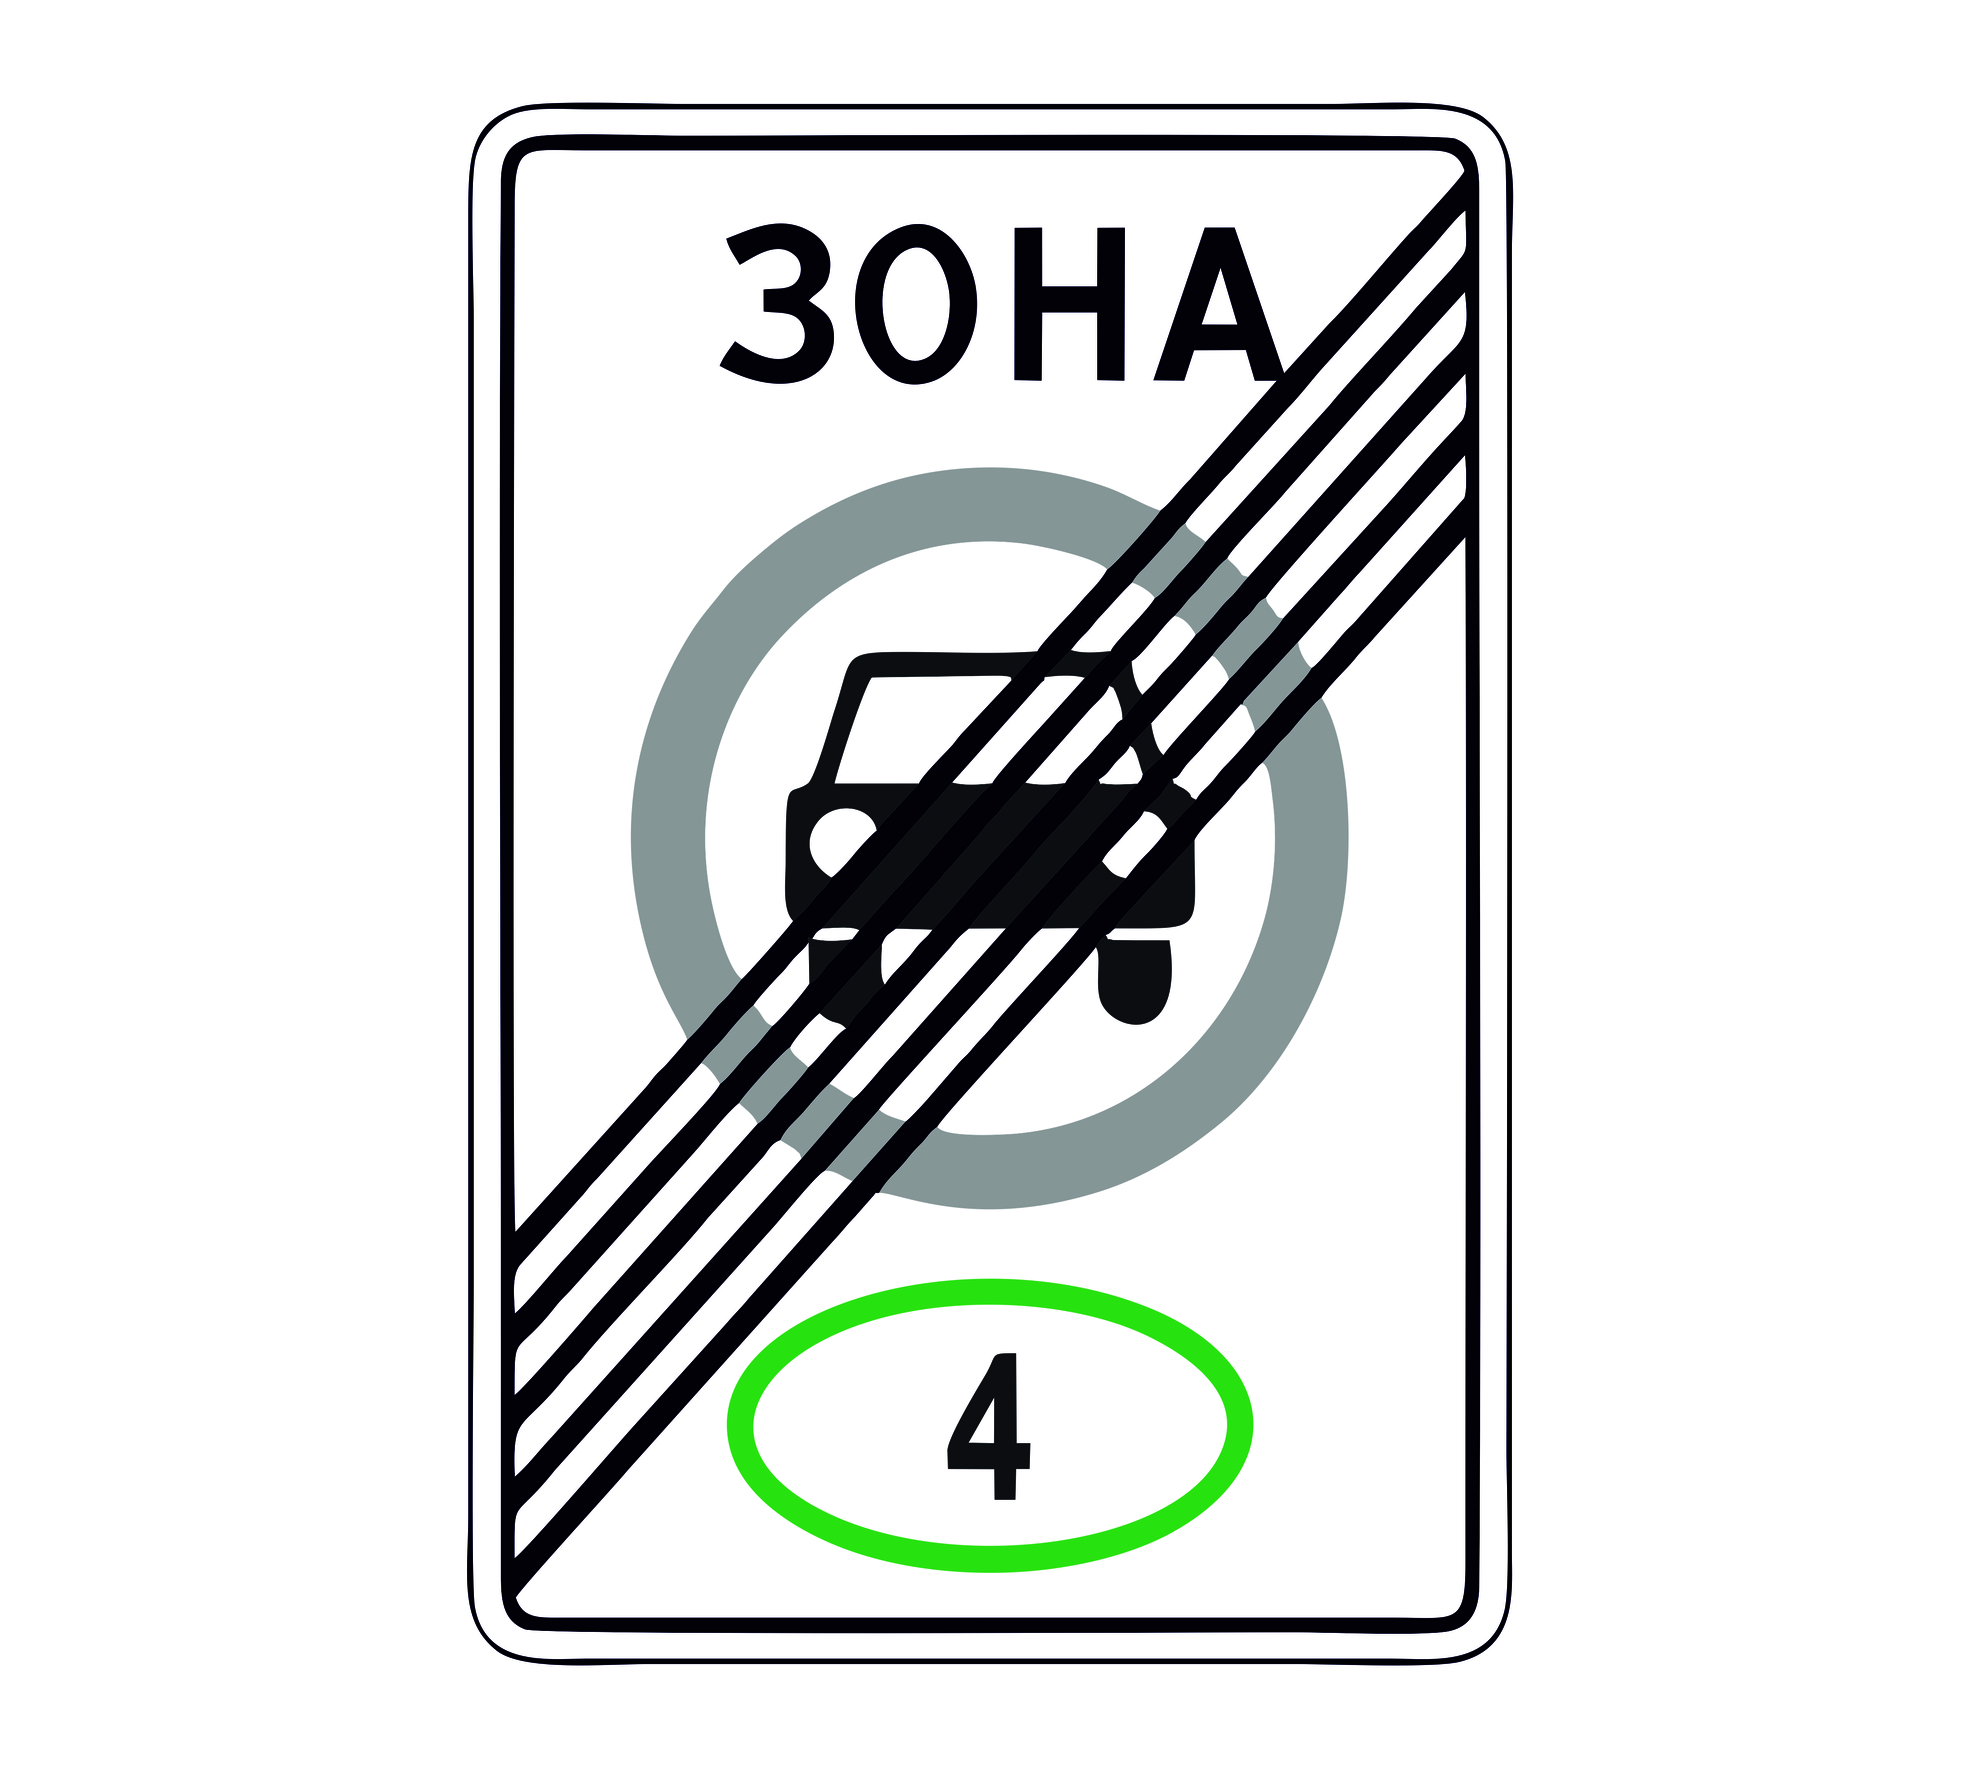 Знак 5.37 Конец зоны с ограничением экологического класса механических транспортных средств